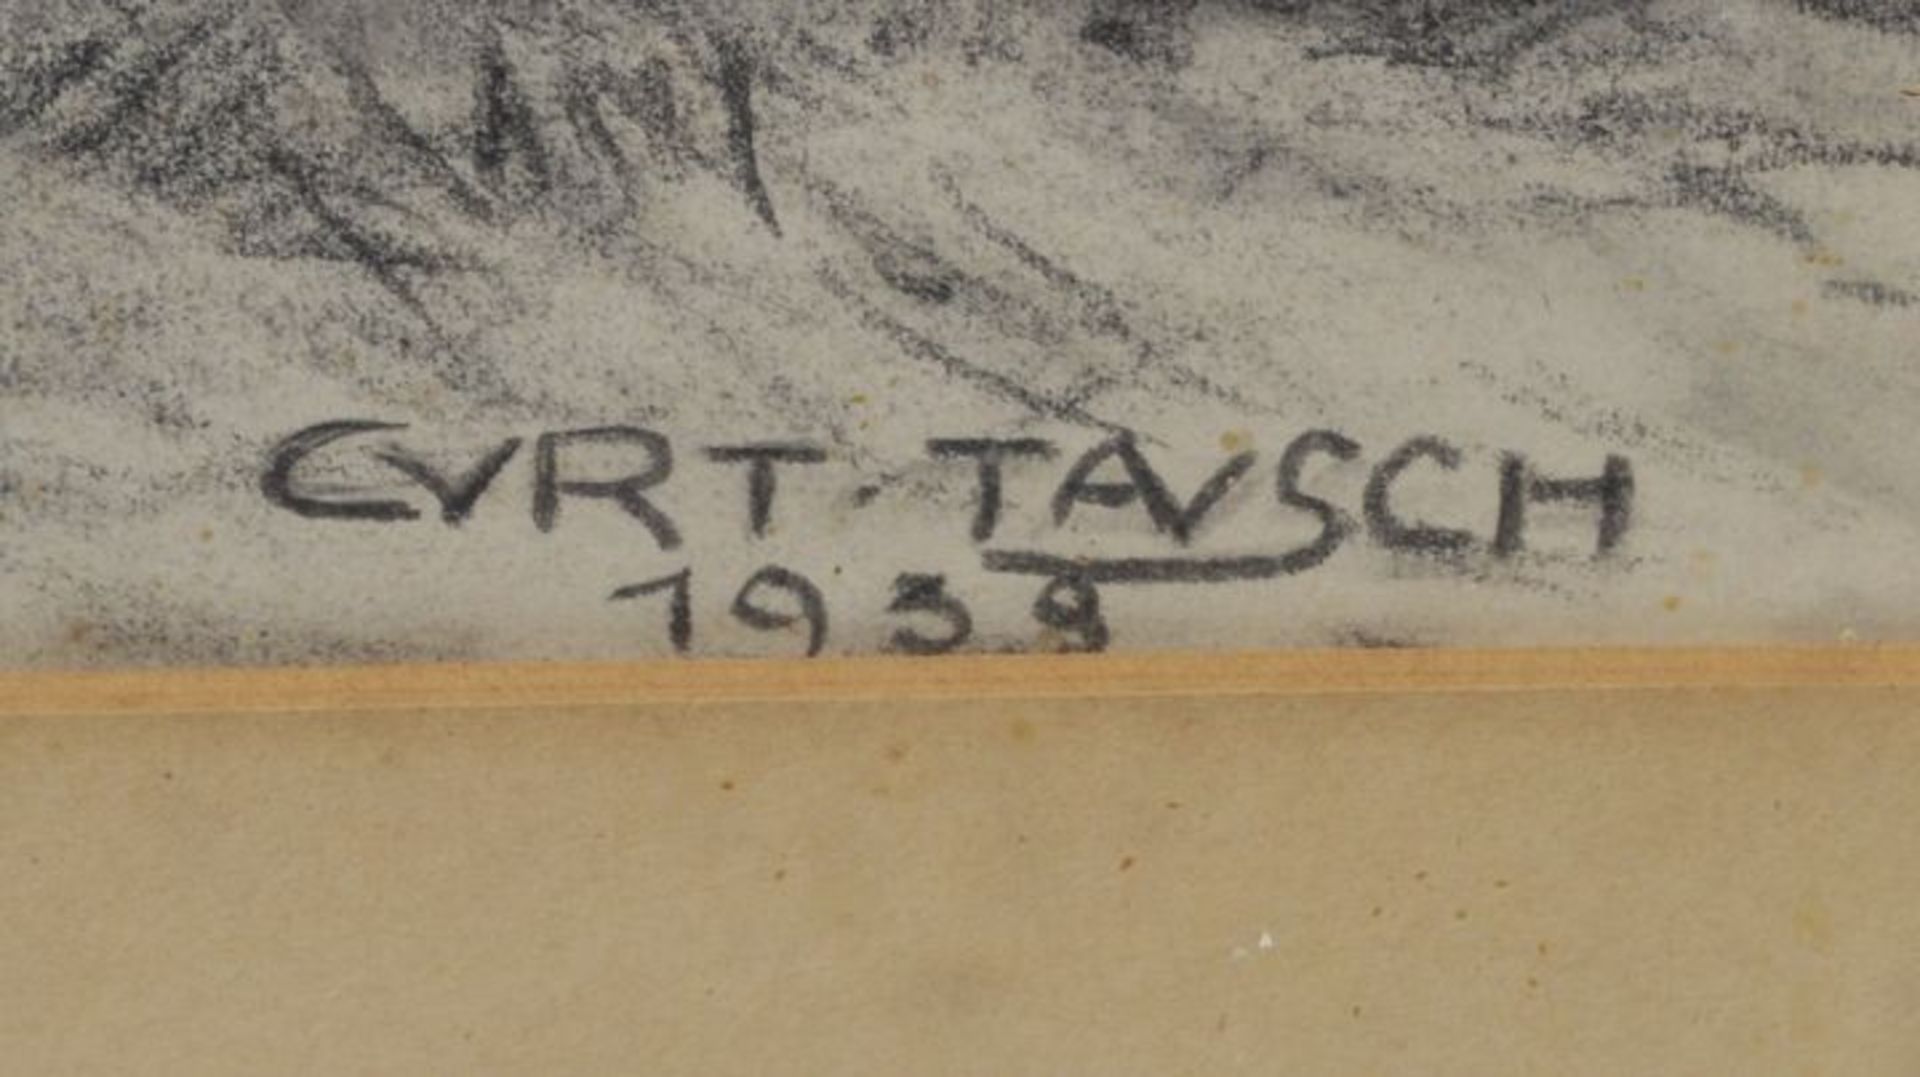 Tausch, Curt "Vollblutjährlinge", 1938. Kohlezeichnung, weiß gehöht, u. re. sign. "Curt Tausch" - Bild 6 aus 7